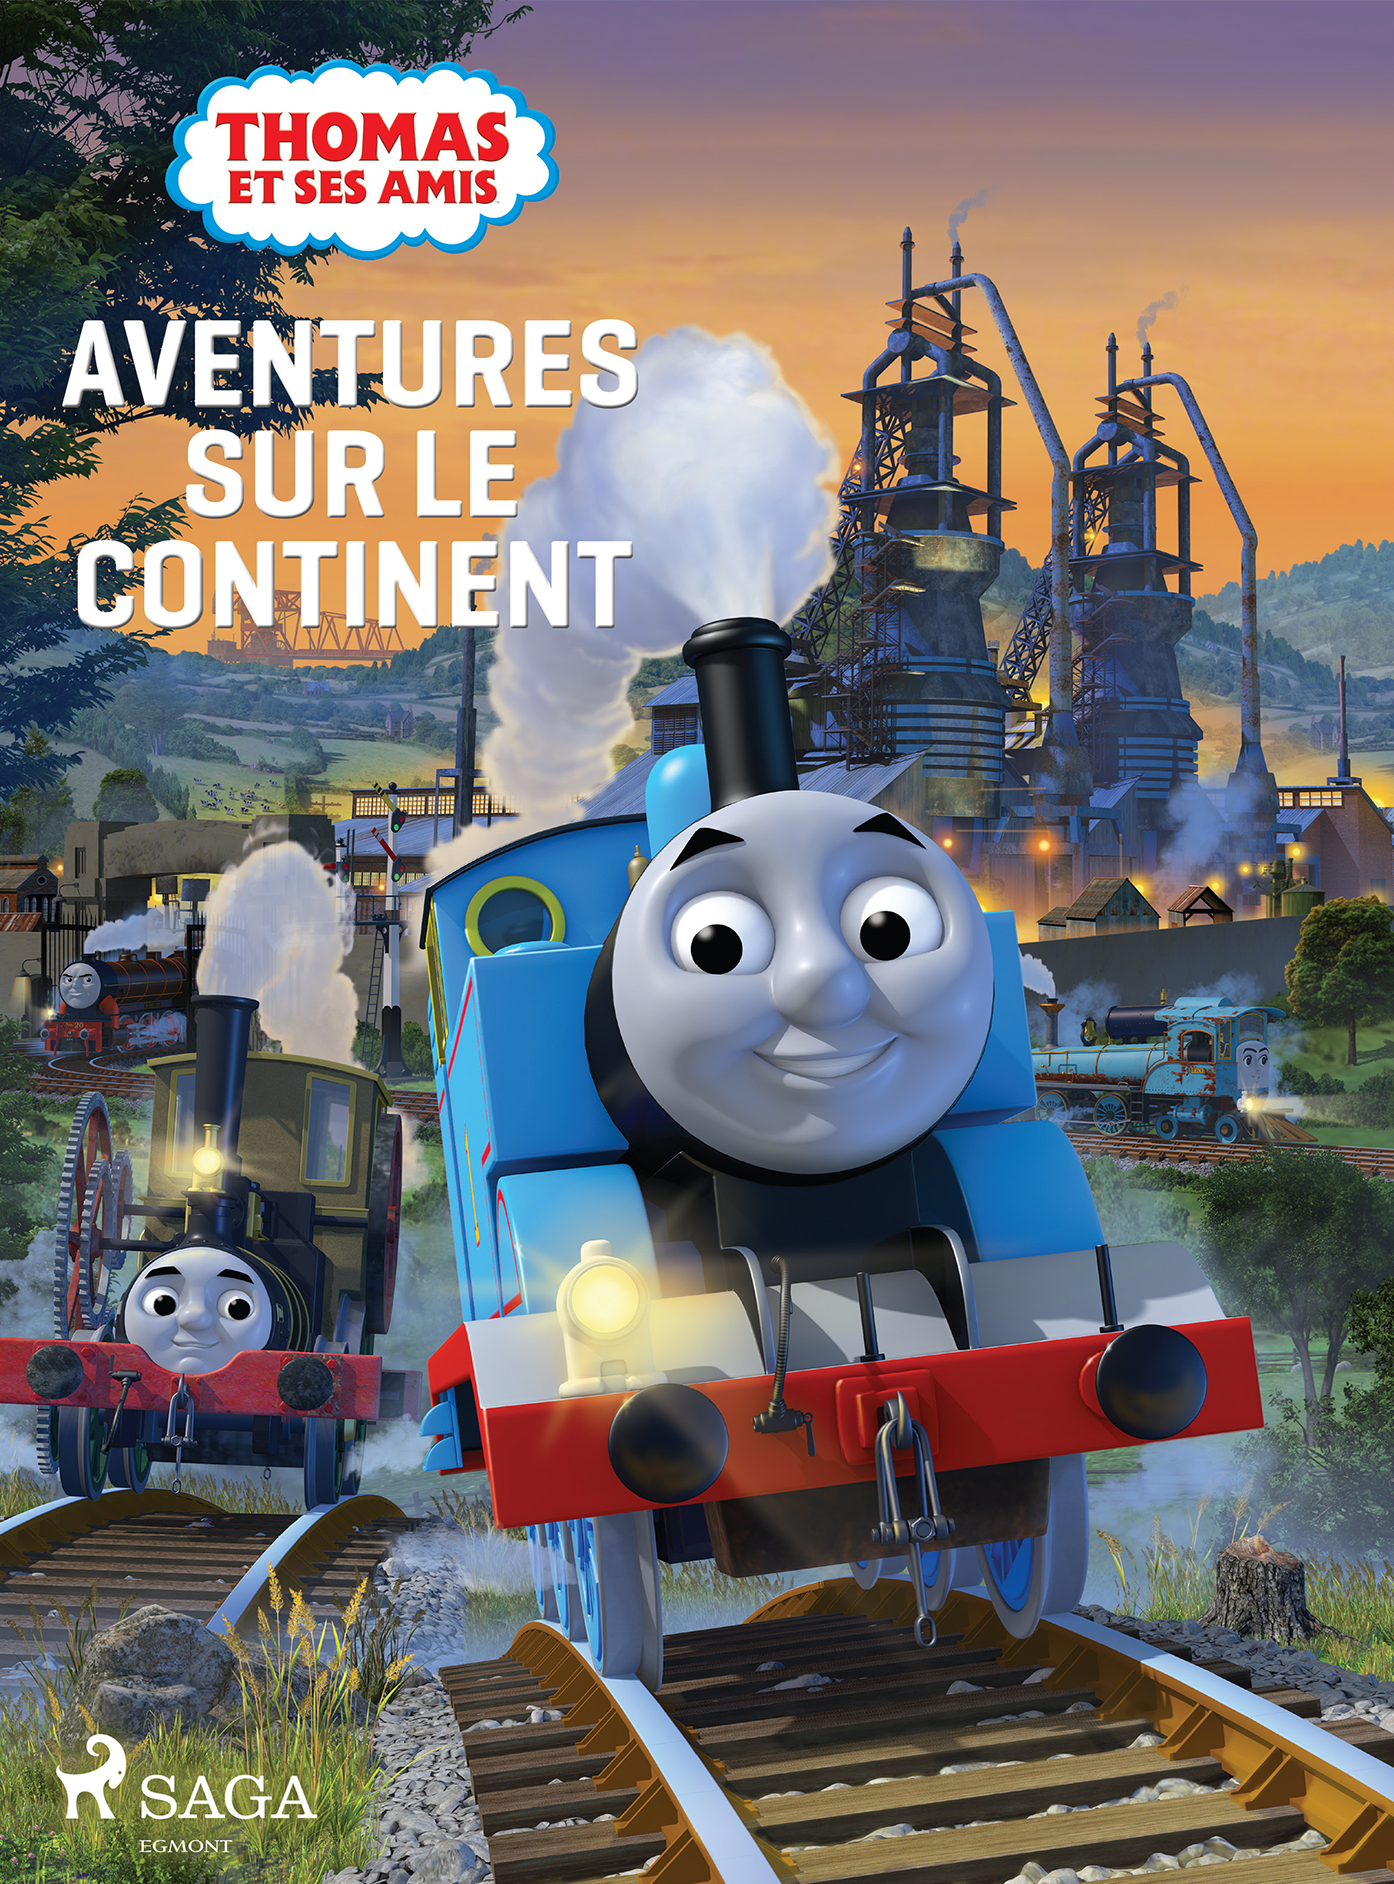 Thomas et ses amis - Aventure sur le continent